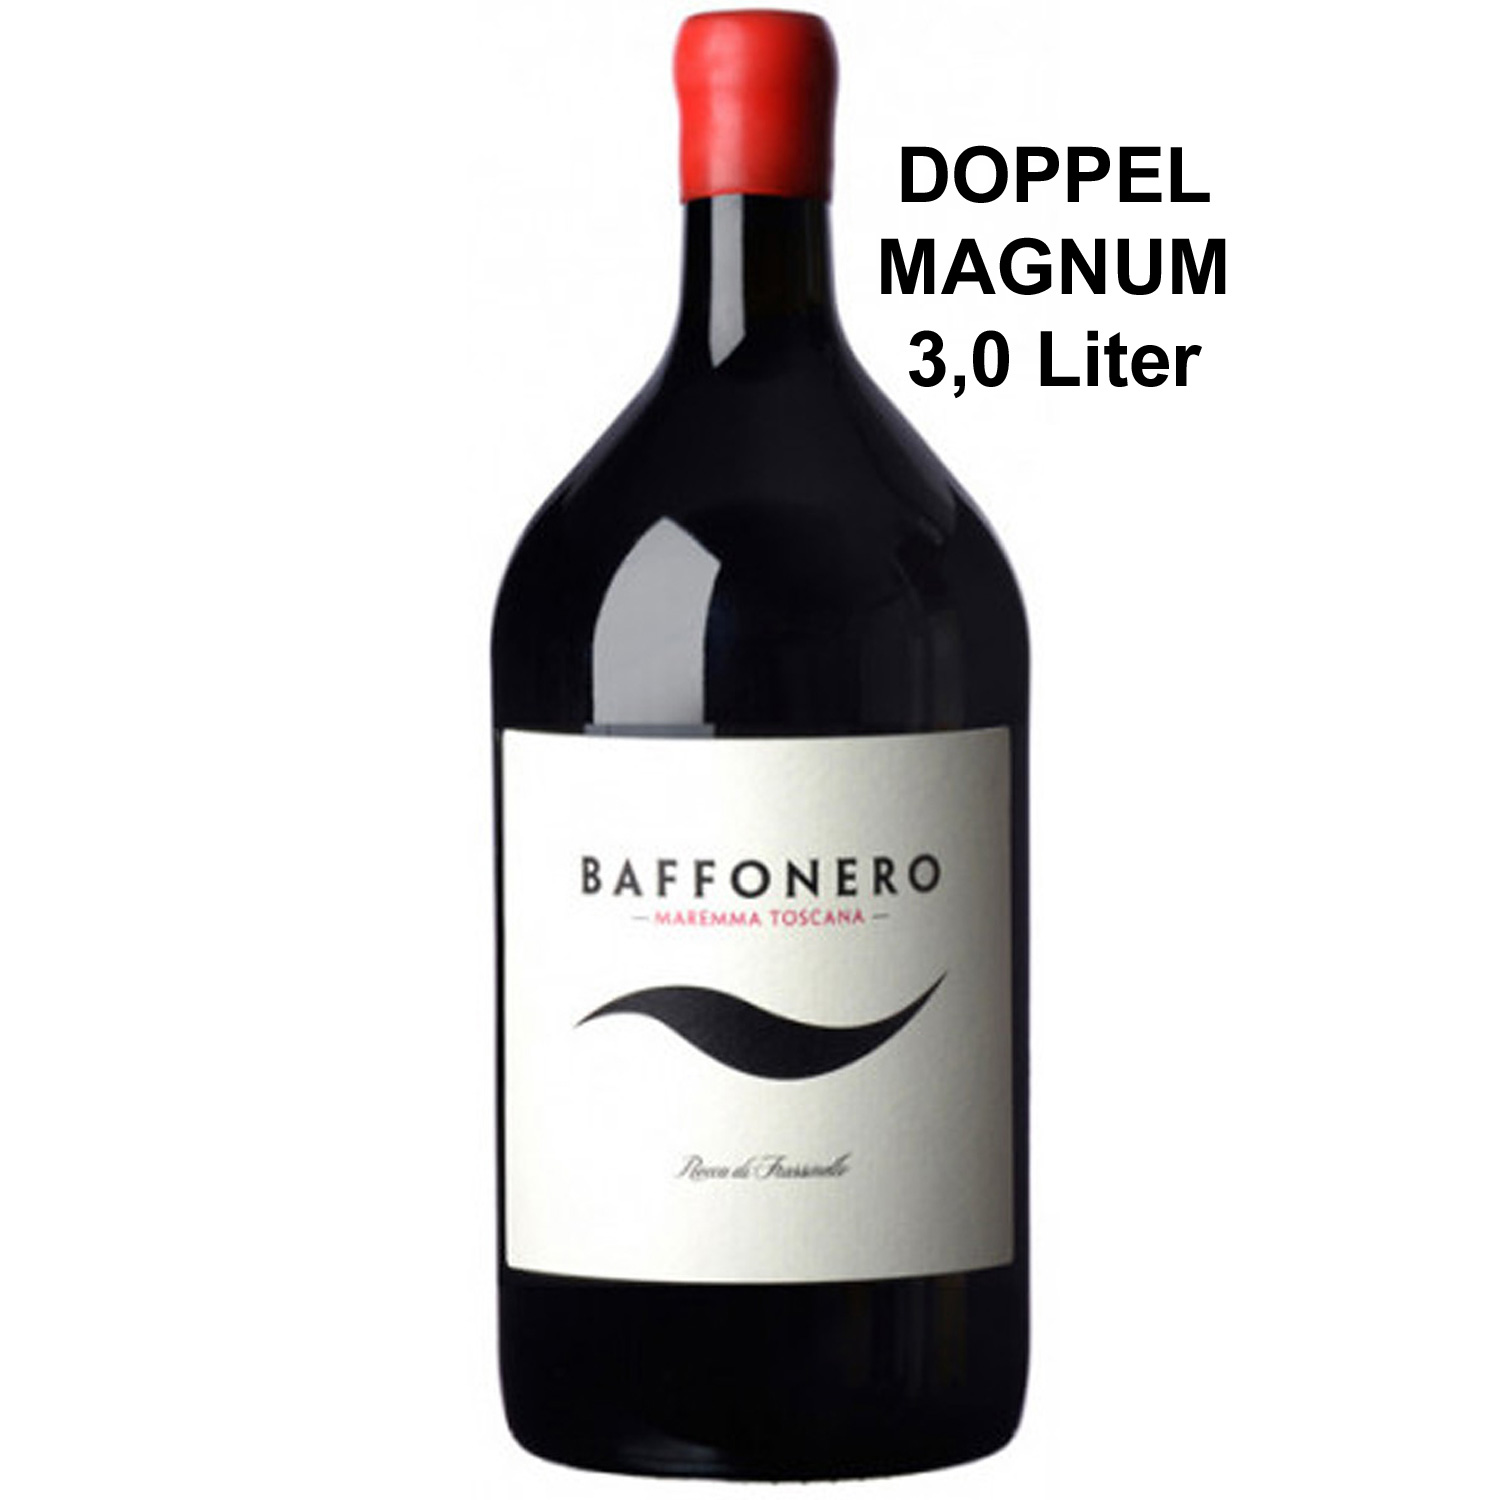 Italienischer Rotwein Baffonero 2016 Doppelmagnum